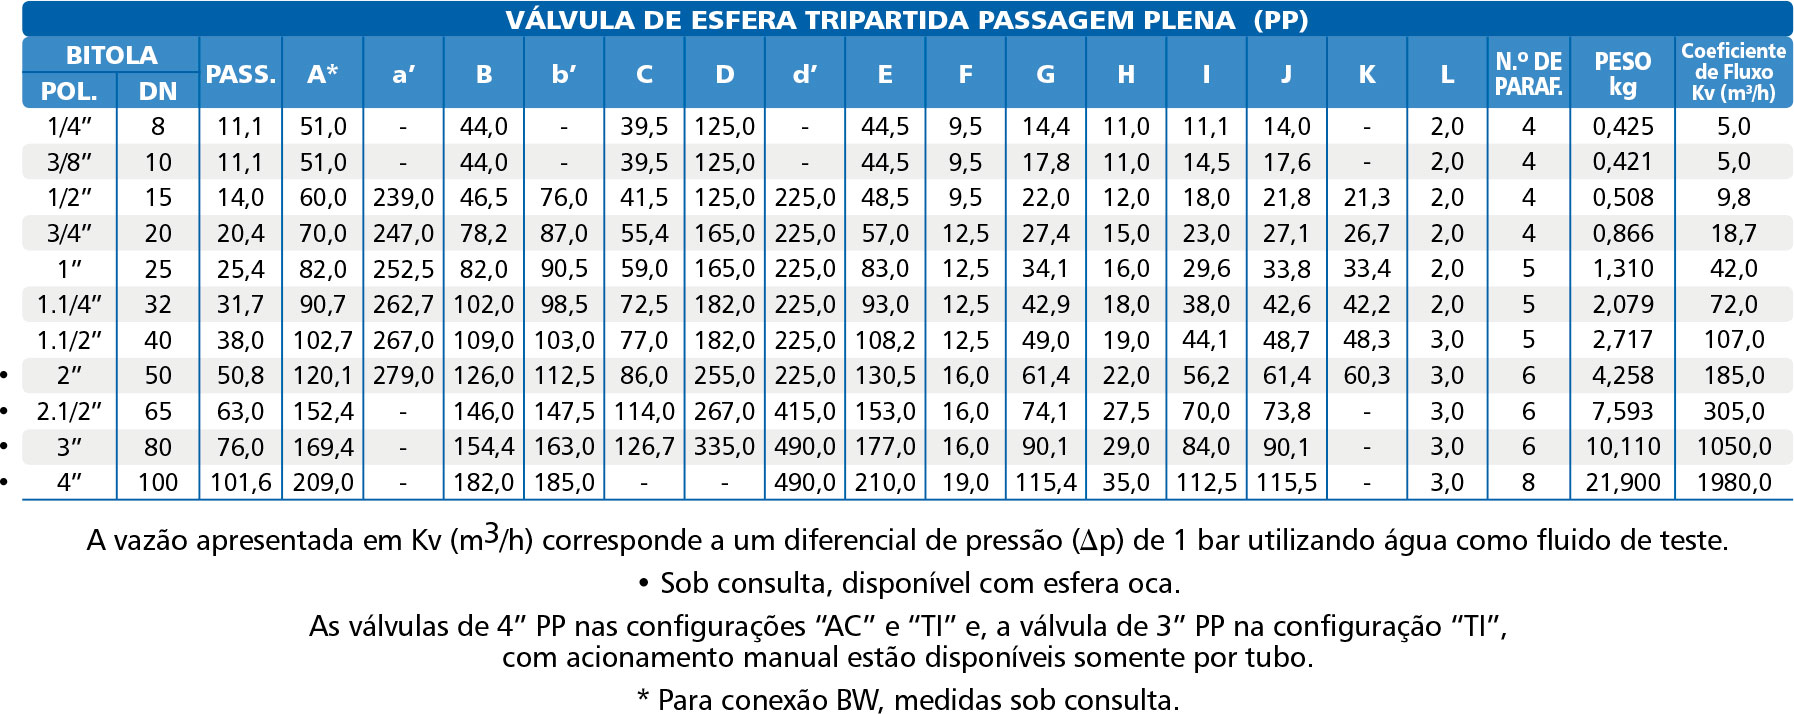 Valvula-de-Esfera-Tripartida-Serie-1000-Plena-tabela